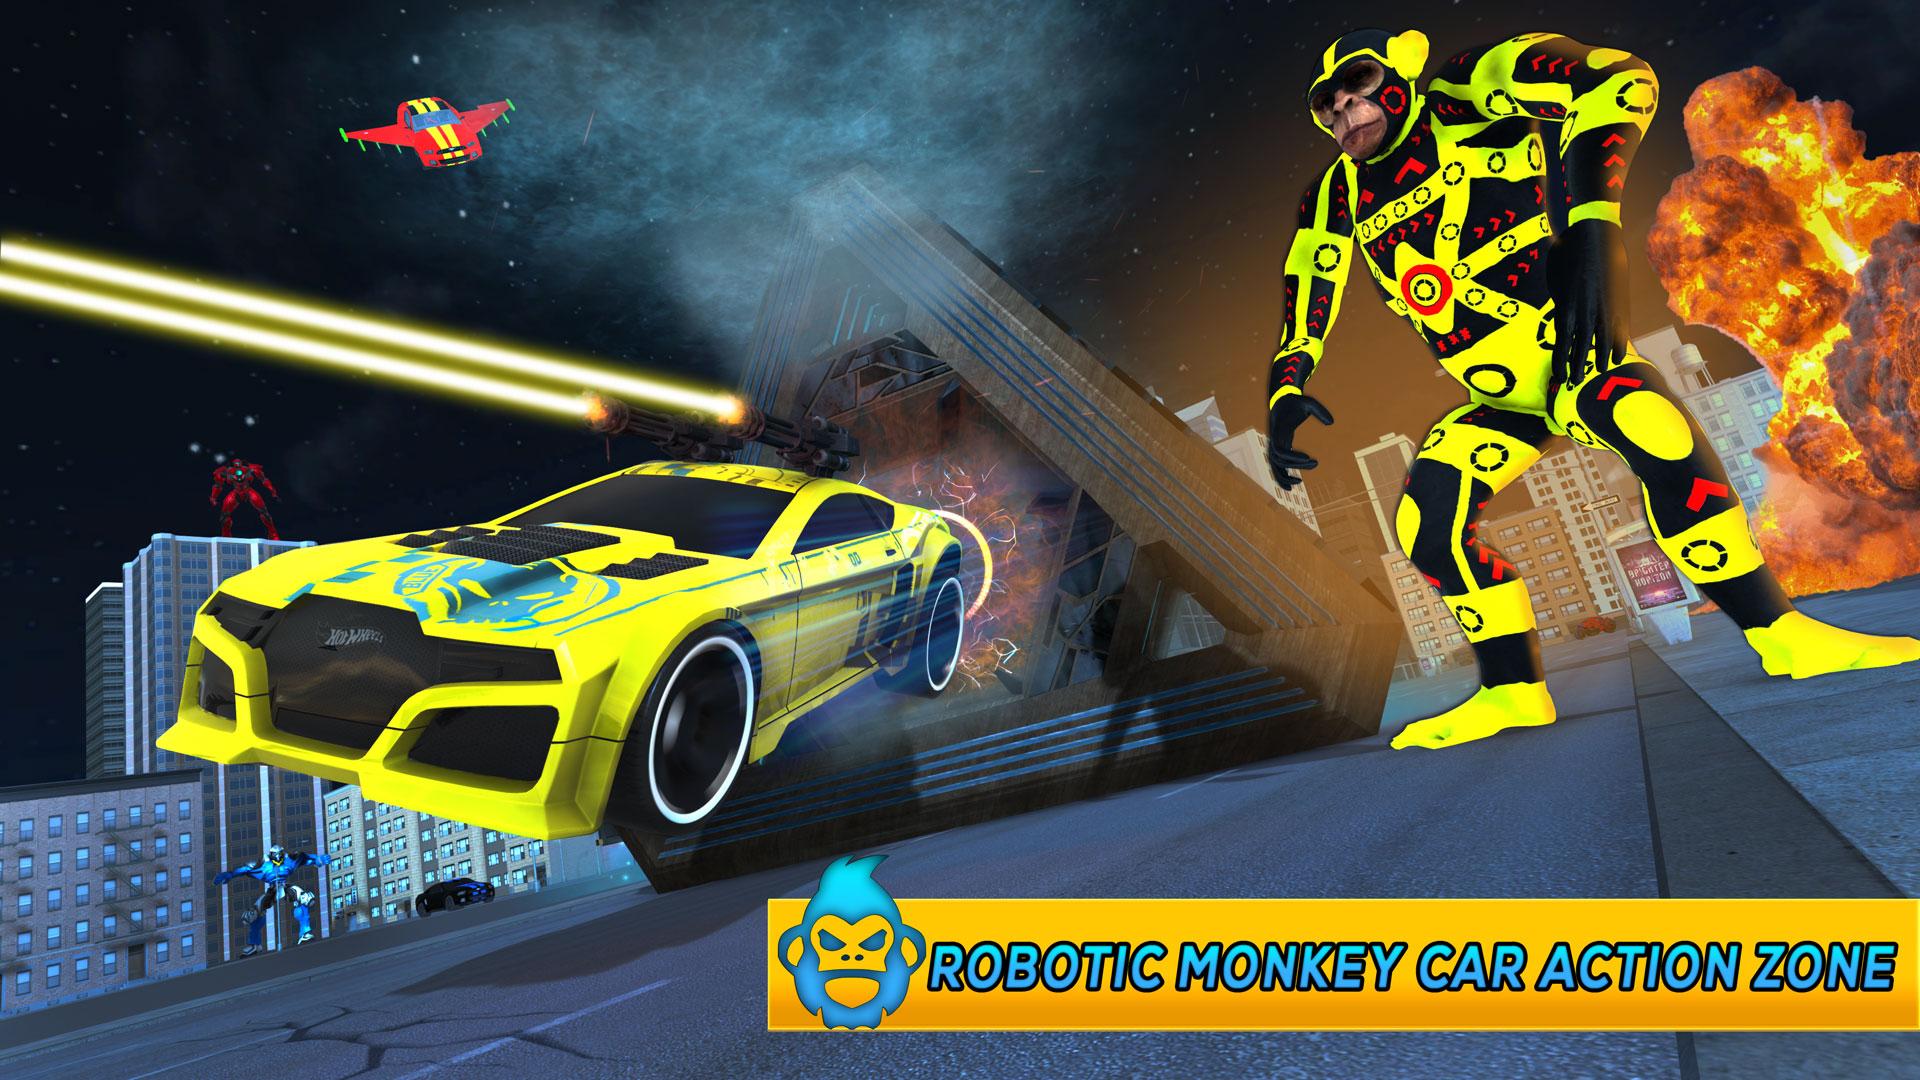 Monkey Car Robot Transformation Game 1.0 Screenshot 2